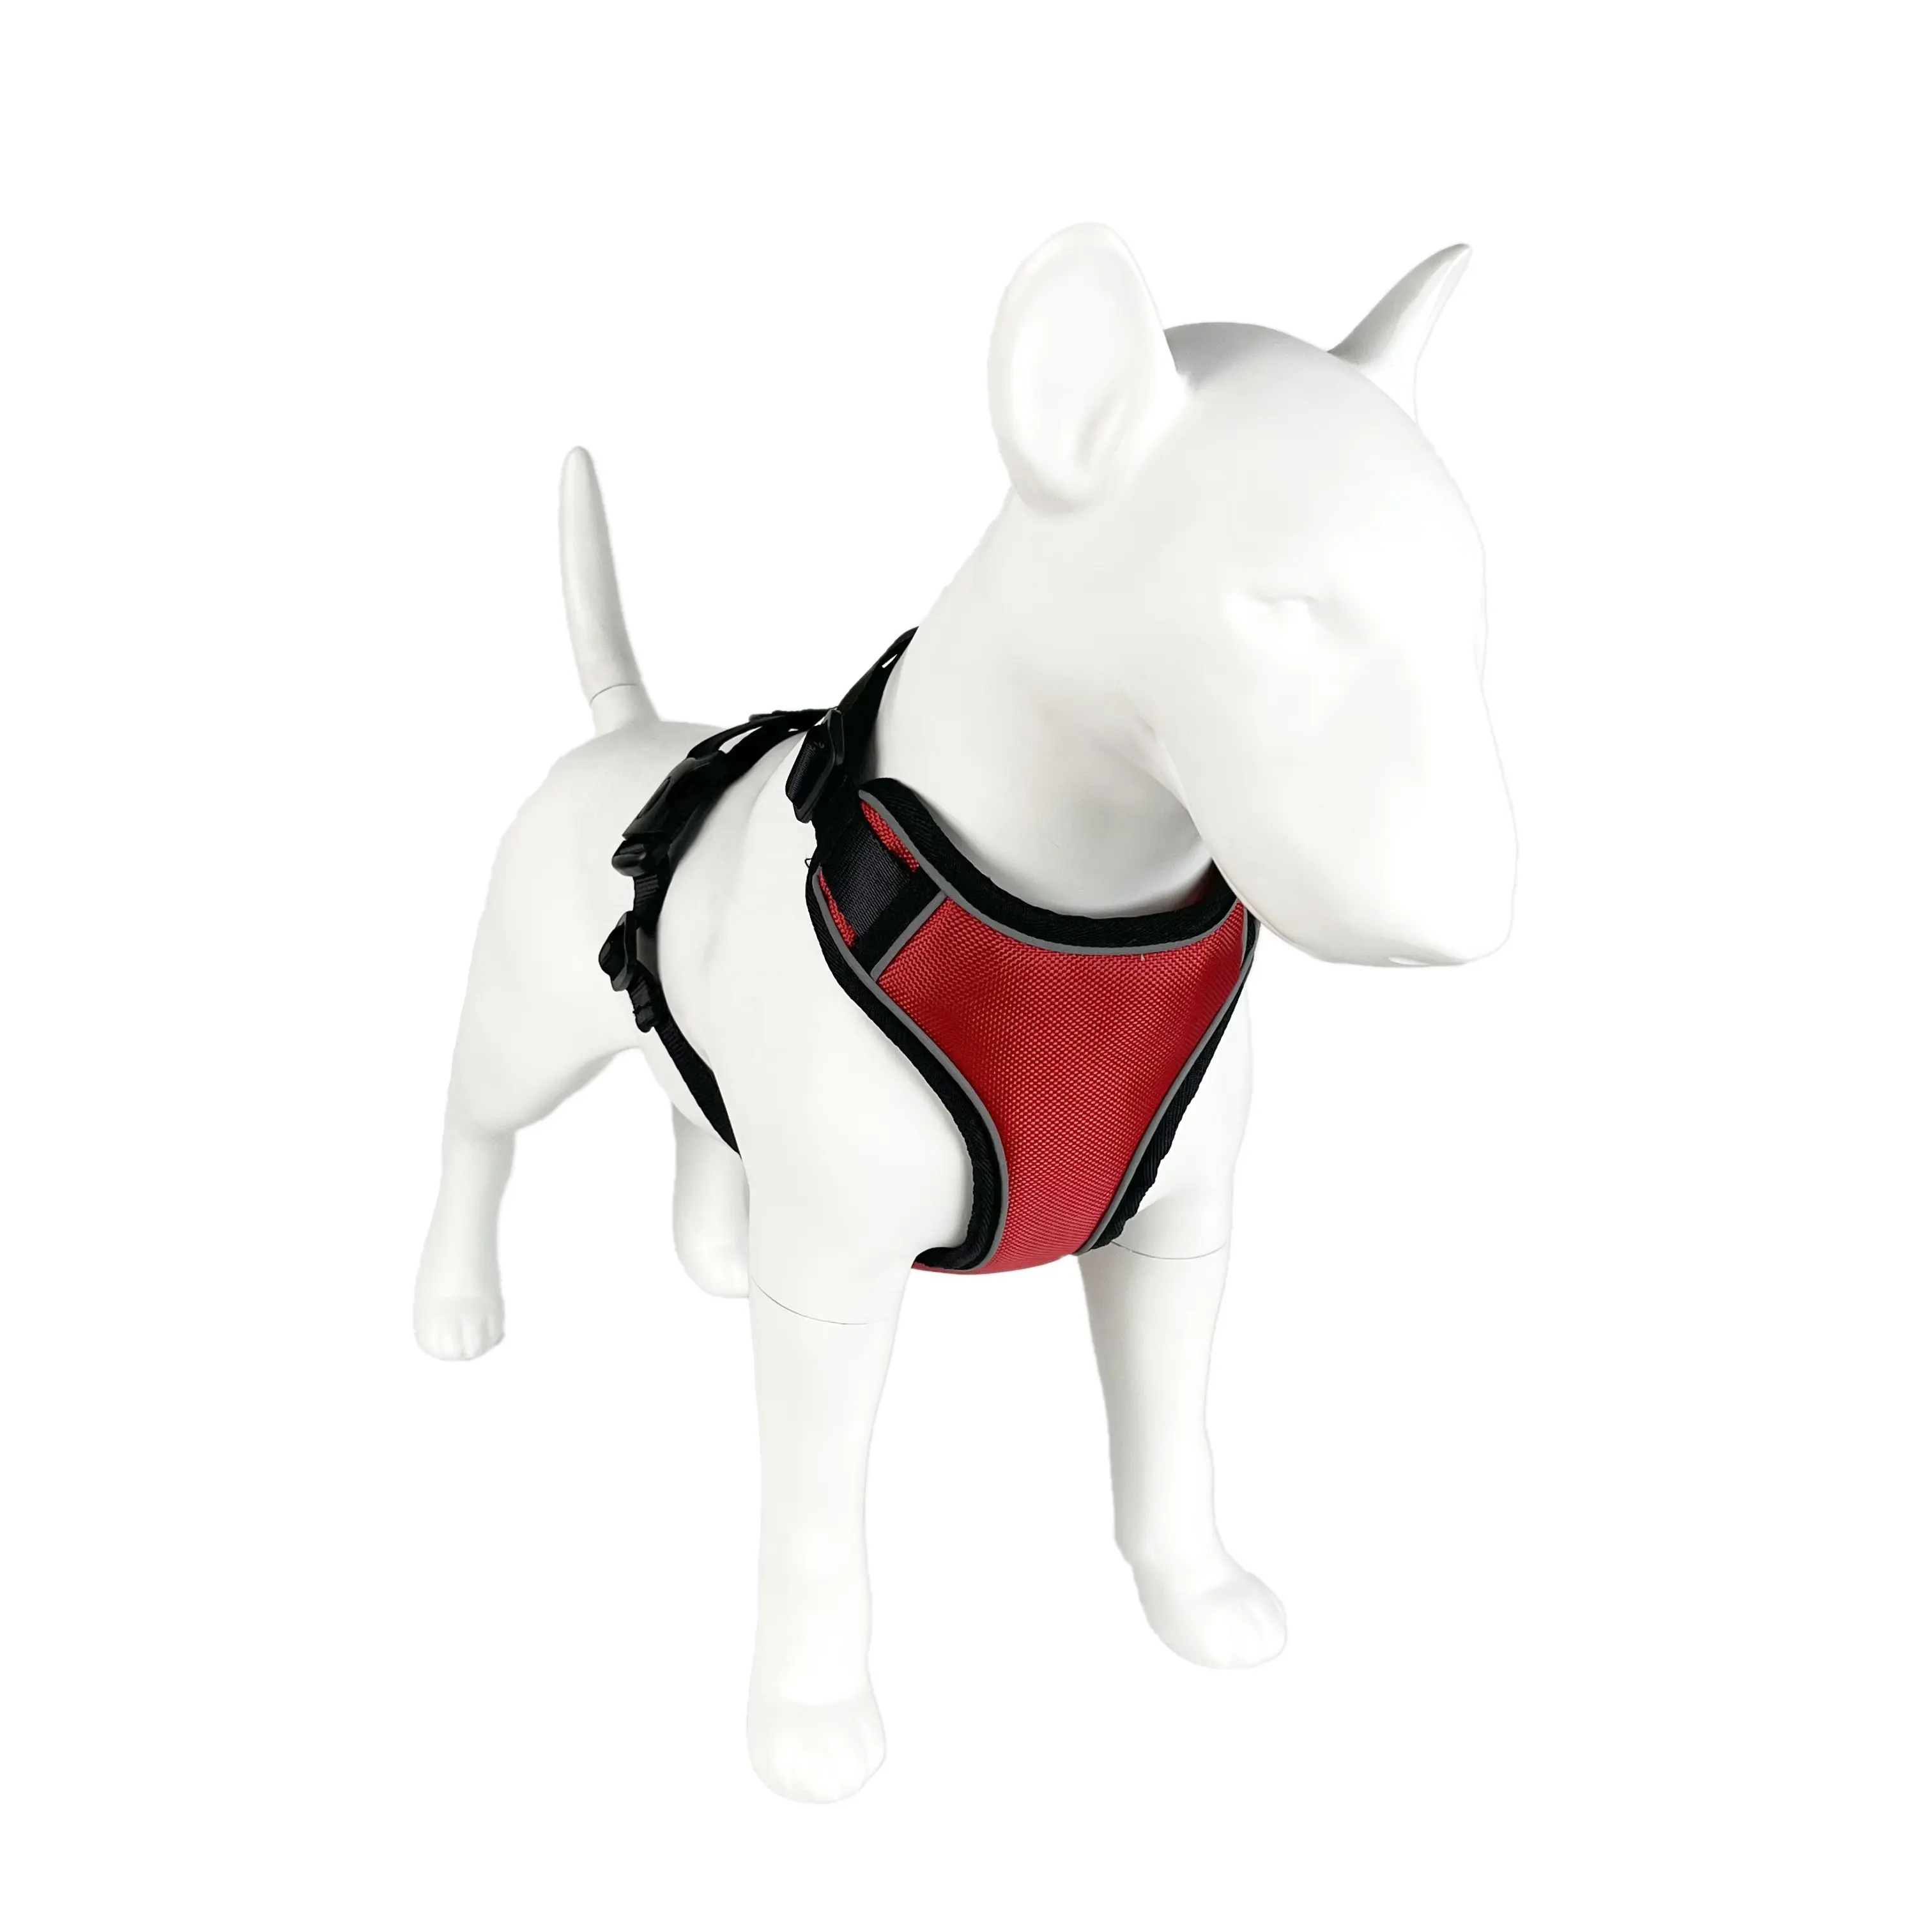 ผู้ผลิตเสื้อกั๊กสุนัข สายรัดสุนัขระบายอากาศสะท้อนแสง สัตว์เลี้ยง